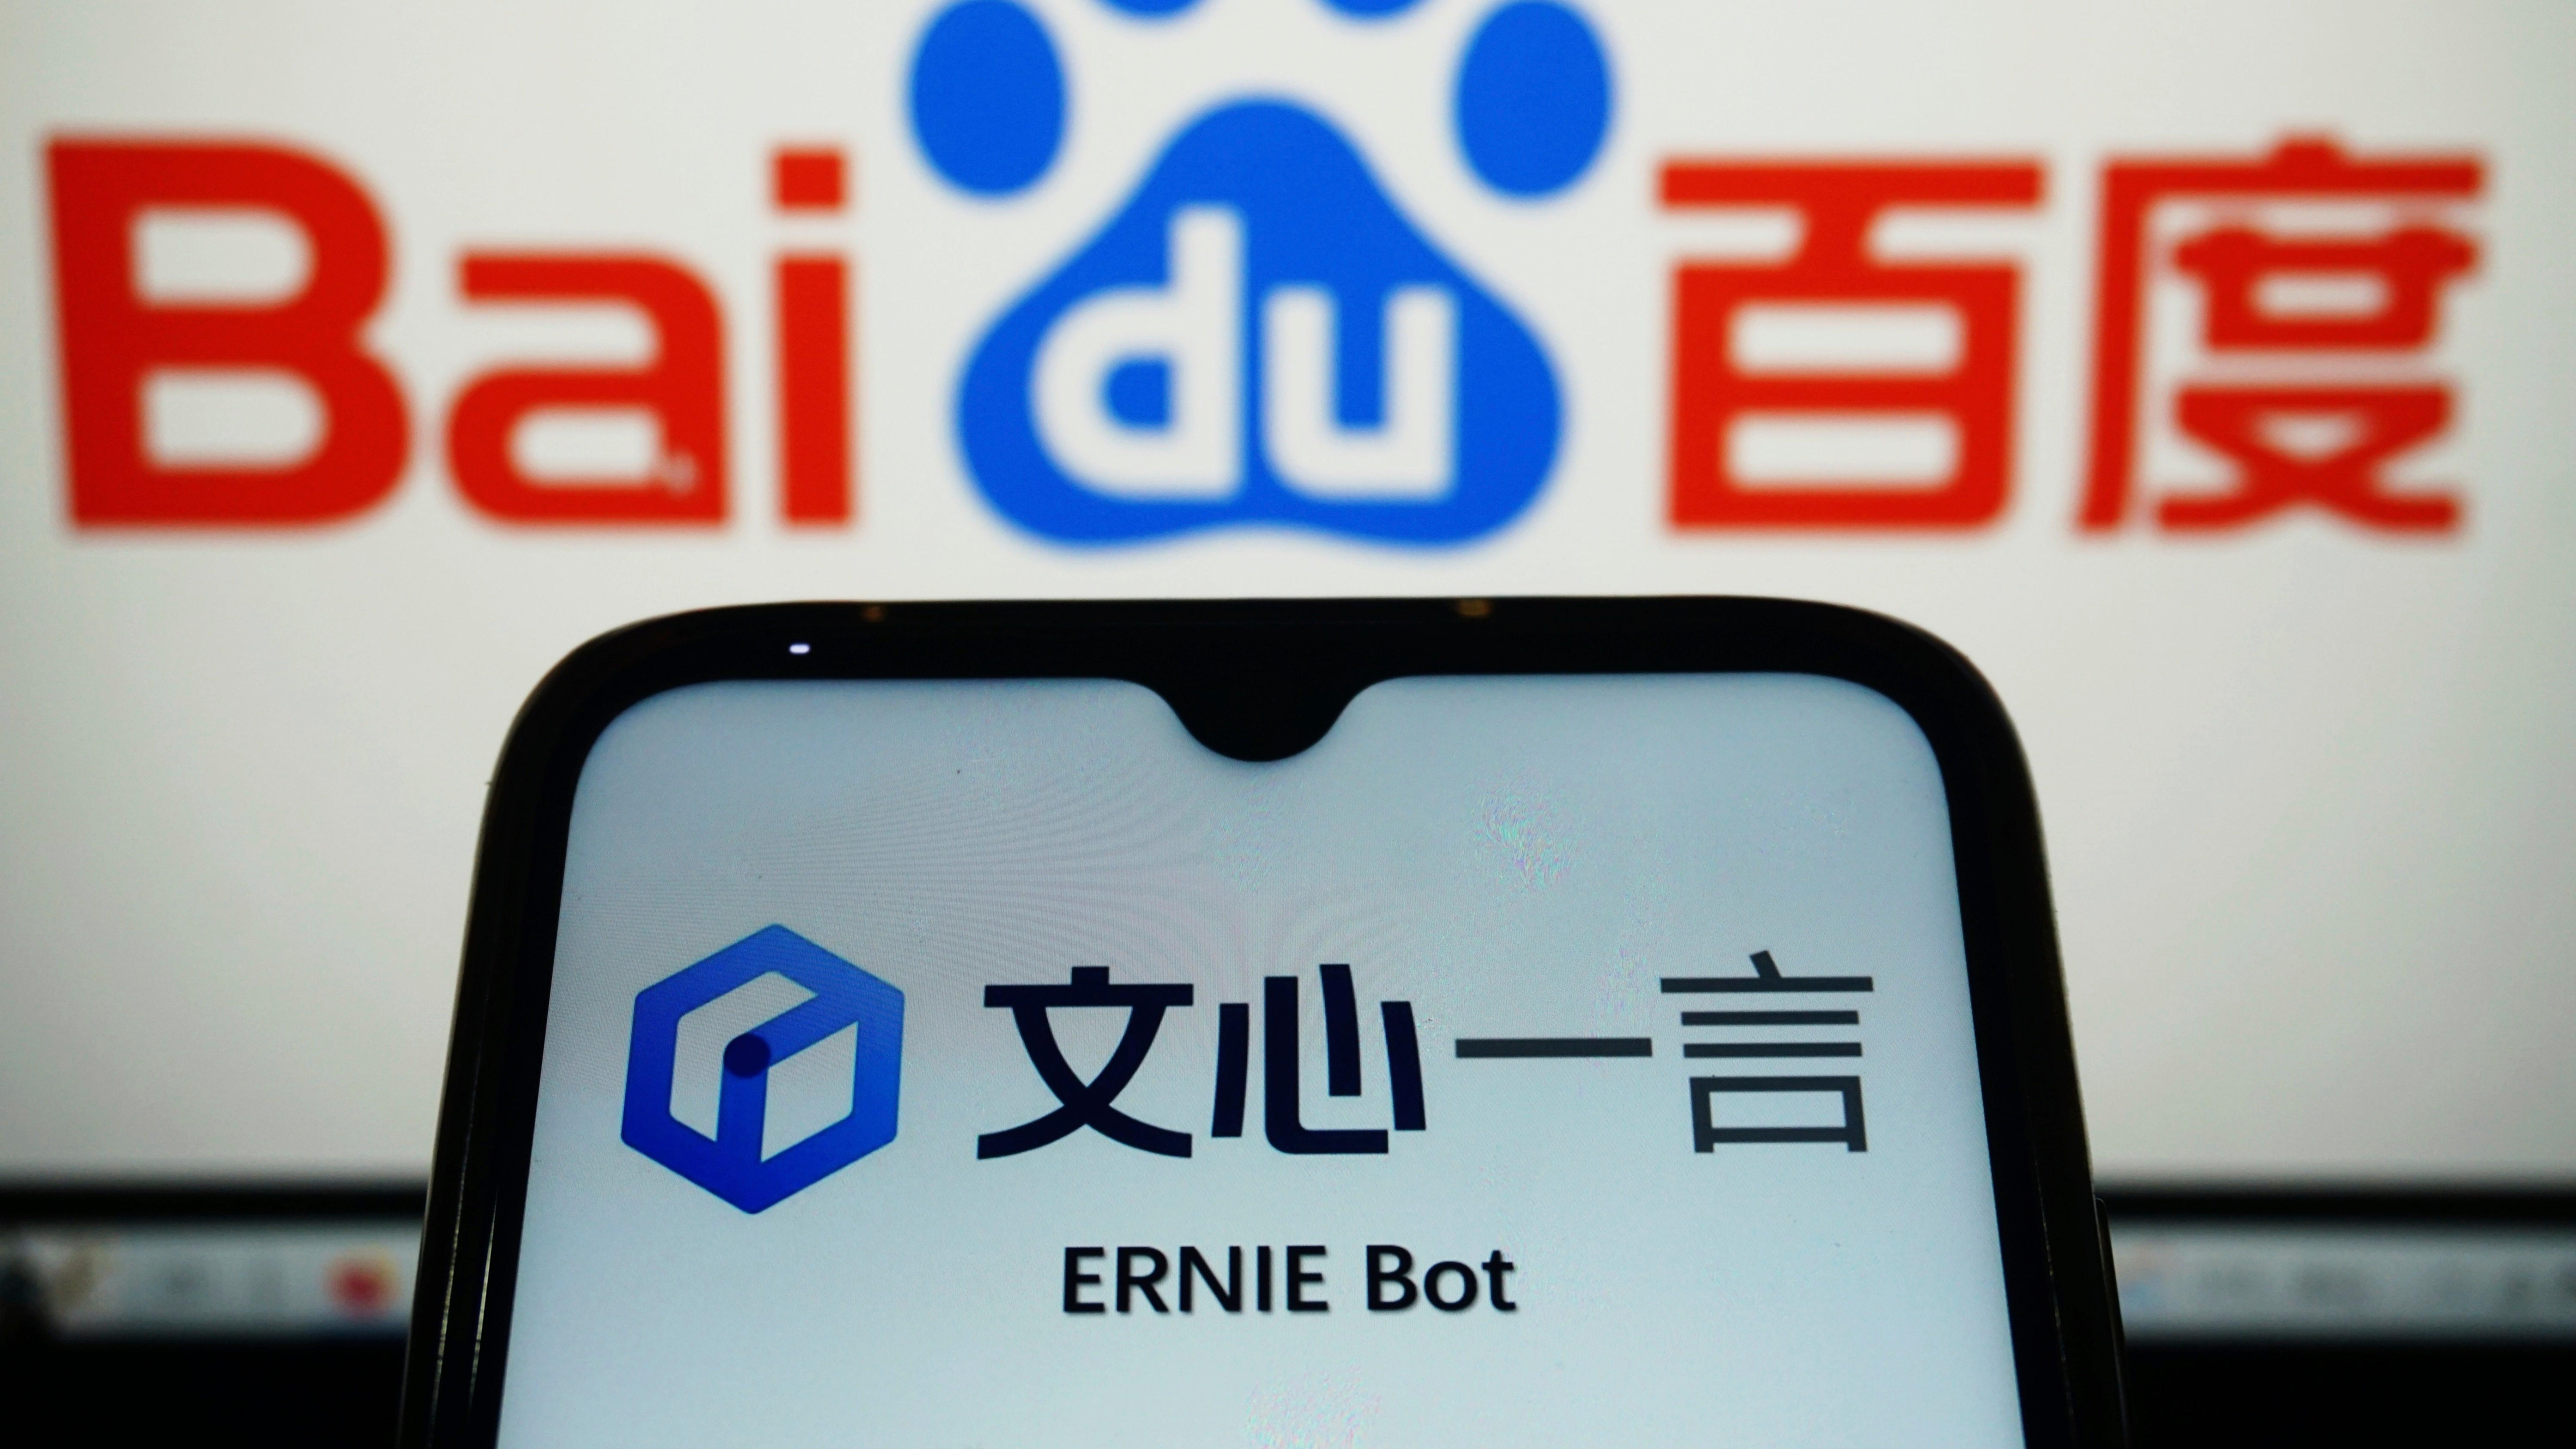 بايدو تقاضي شركة آبل للترويج لها "مزيف" Ernie bots في متجر التطبيقات الخاص بها